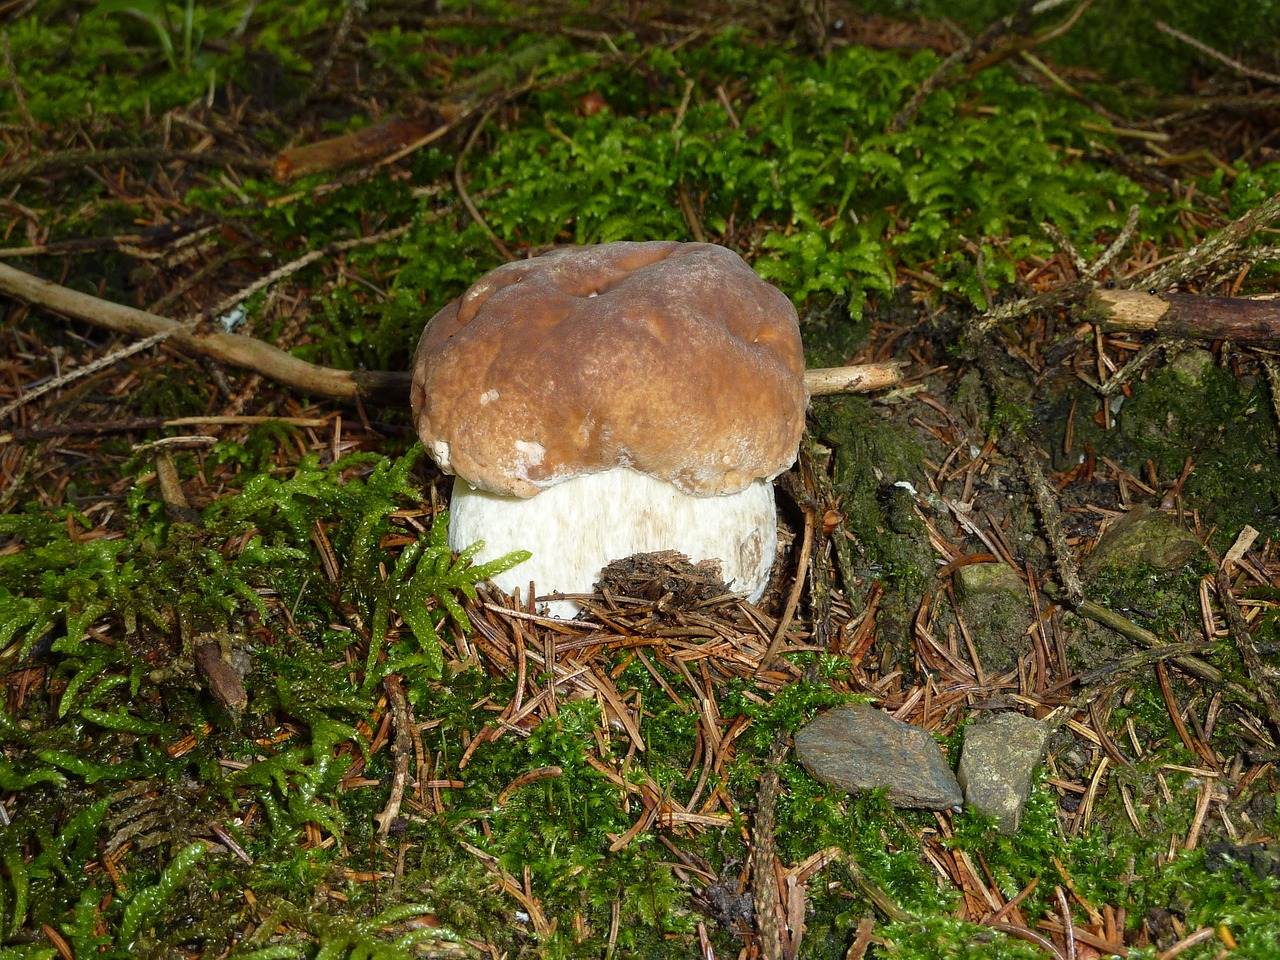 cep herrenpilz mushroom free photo